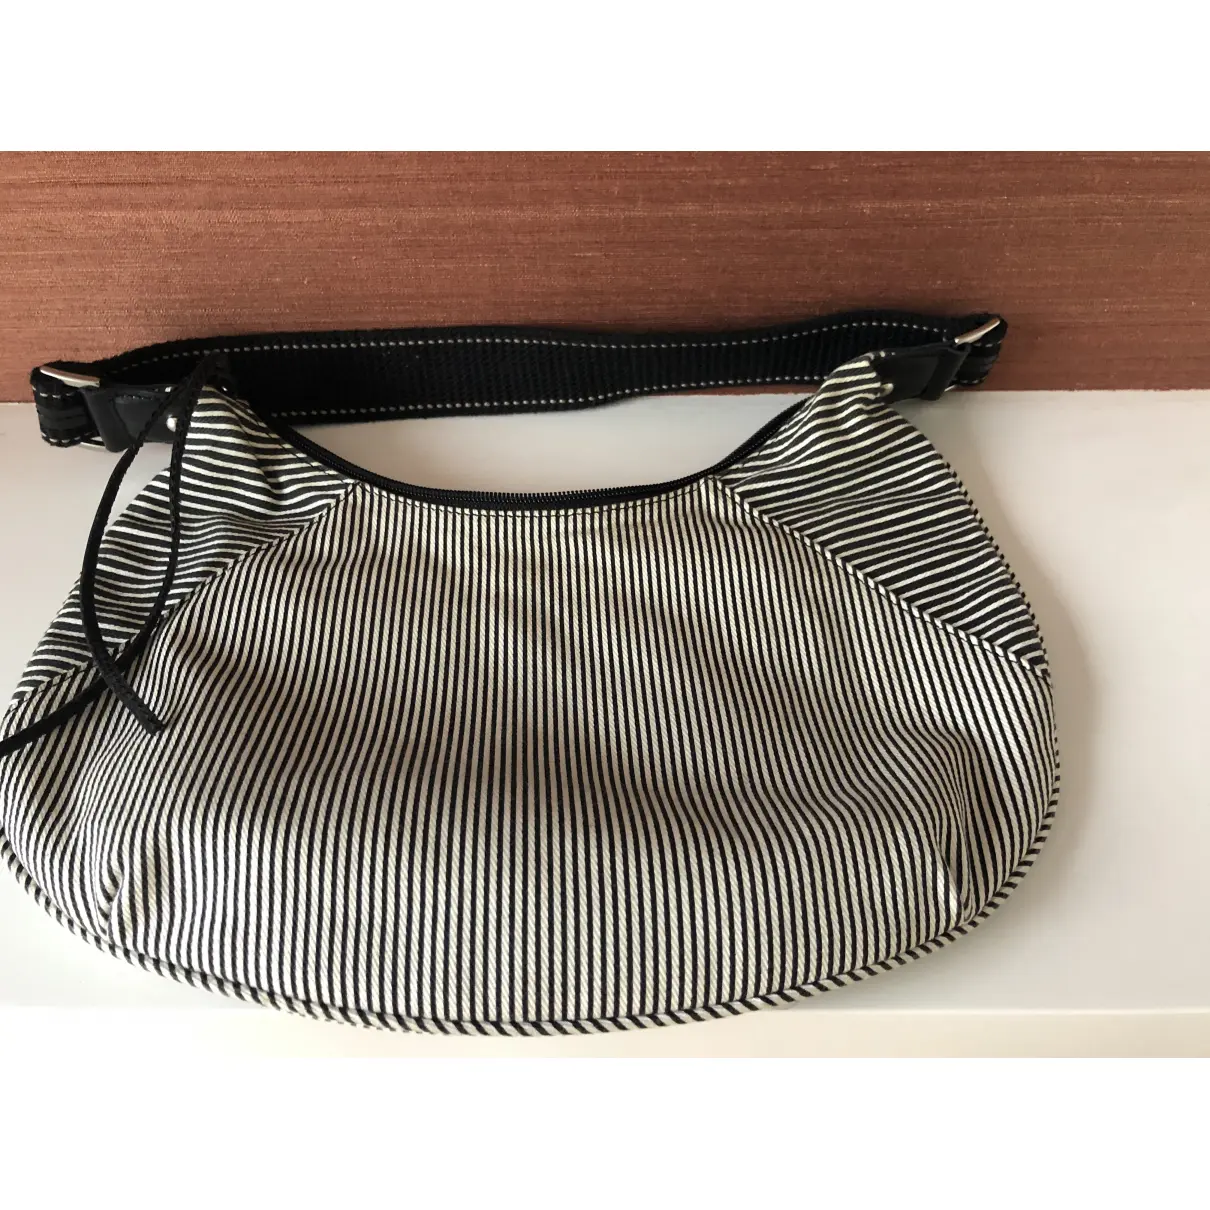 Buy GUESS Cloth handbag online